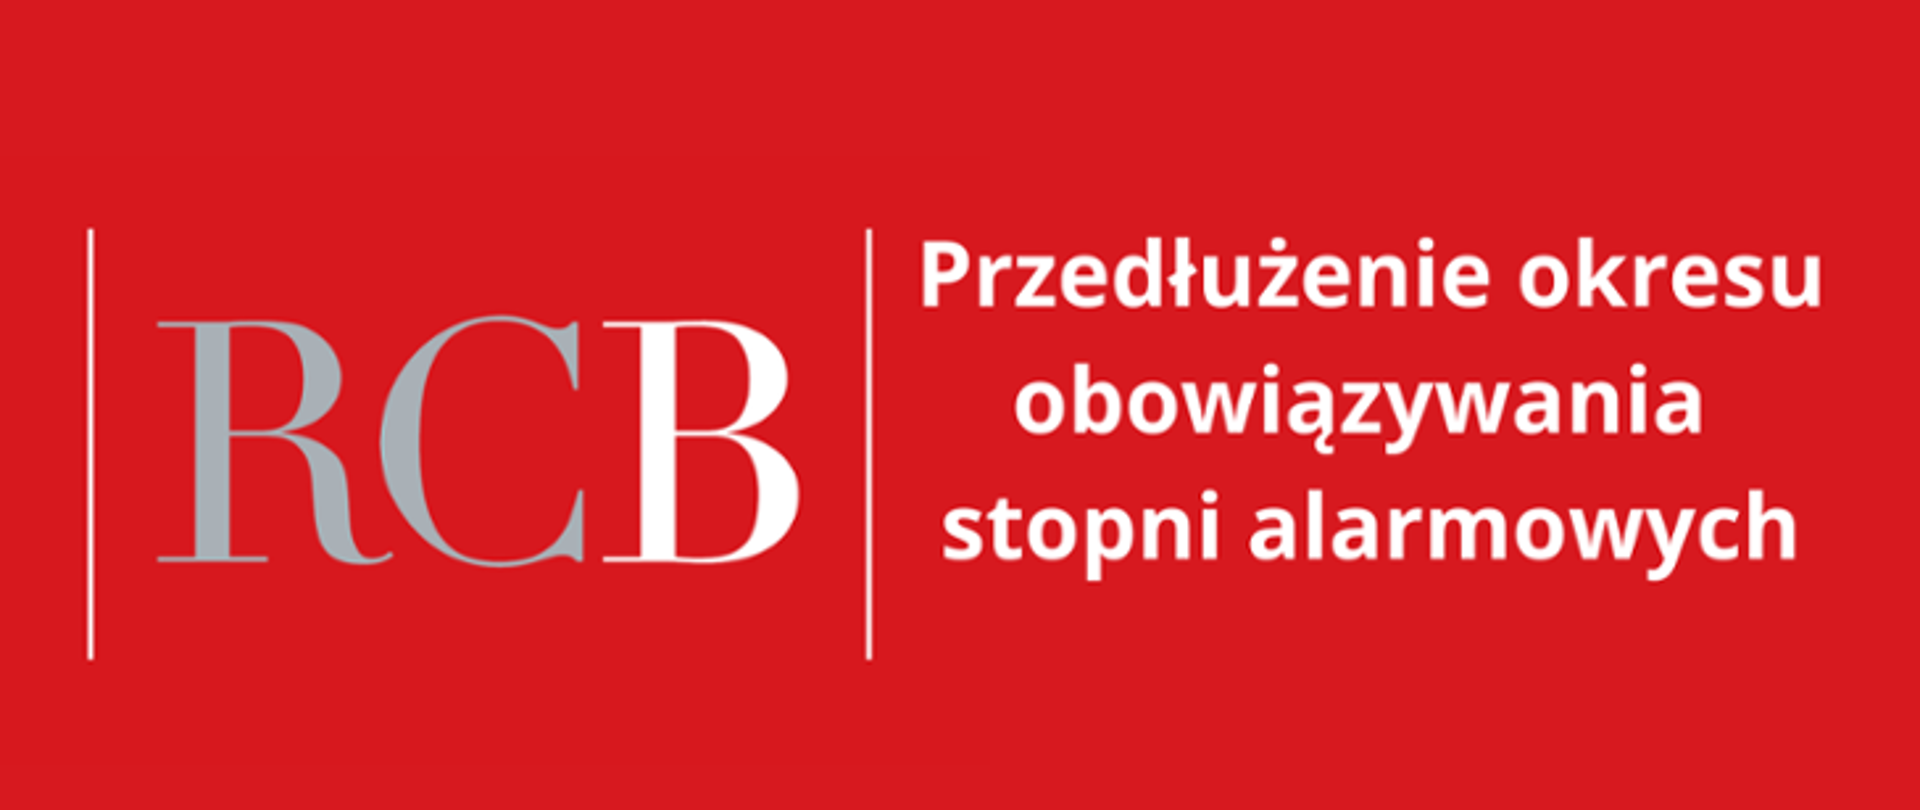 Na czerwonym tle białe Logo RCB wraz z informacją o przedłużeniu obowiązywania stopni alarmowych